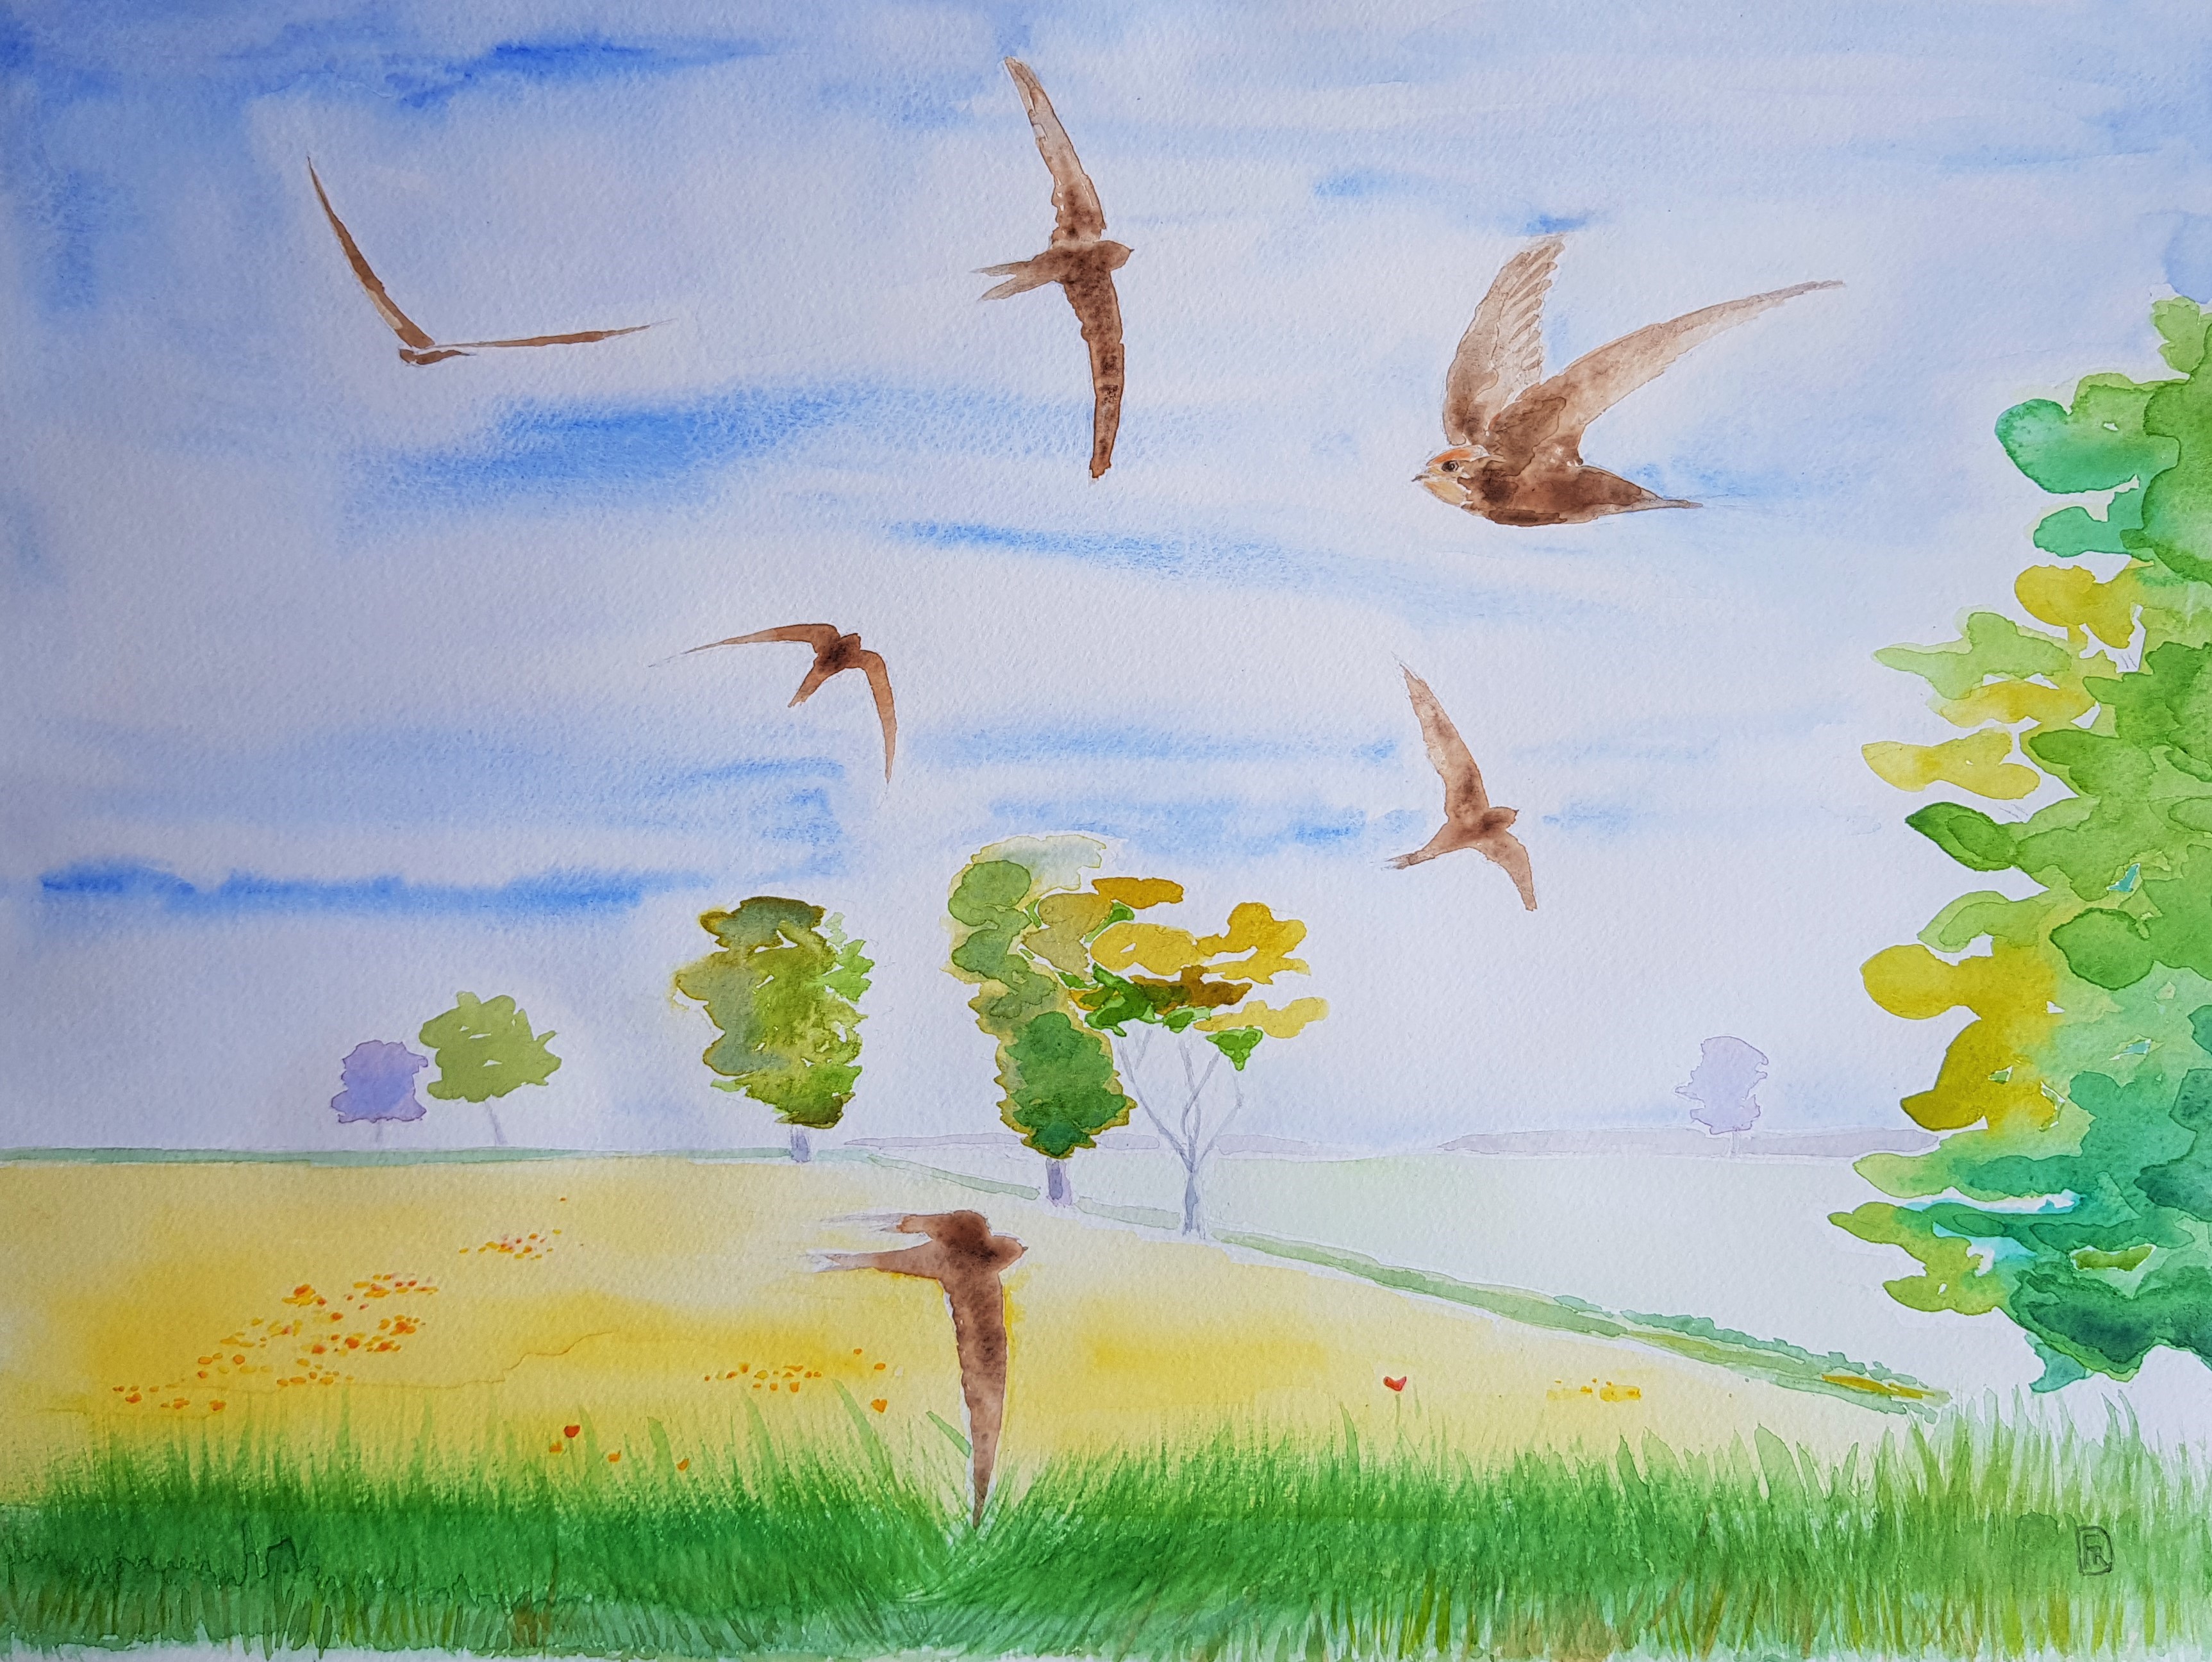 Watercolour of birds in a field